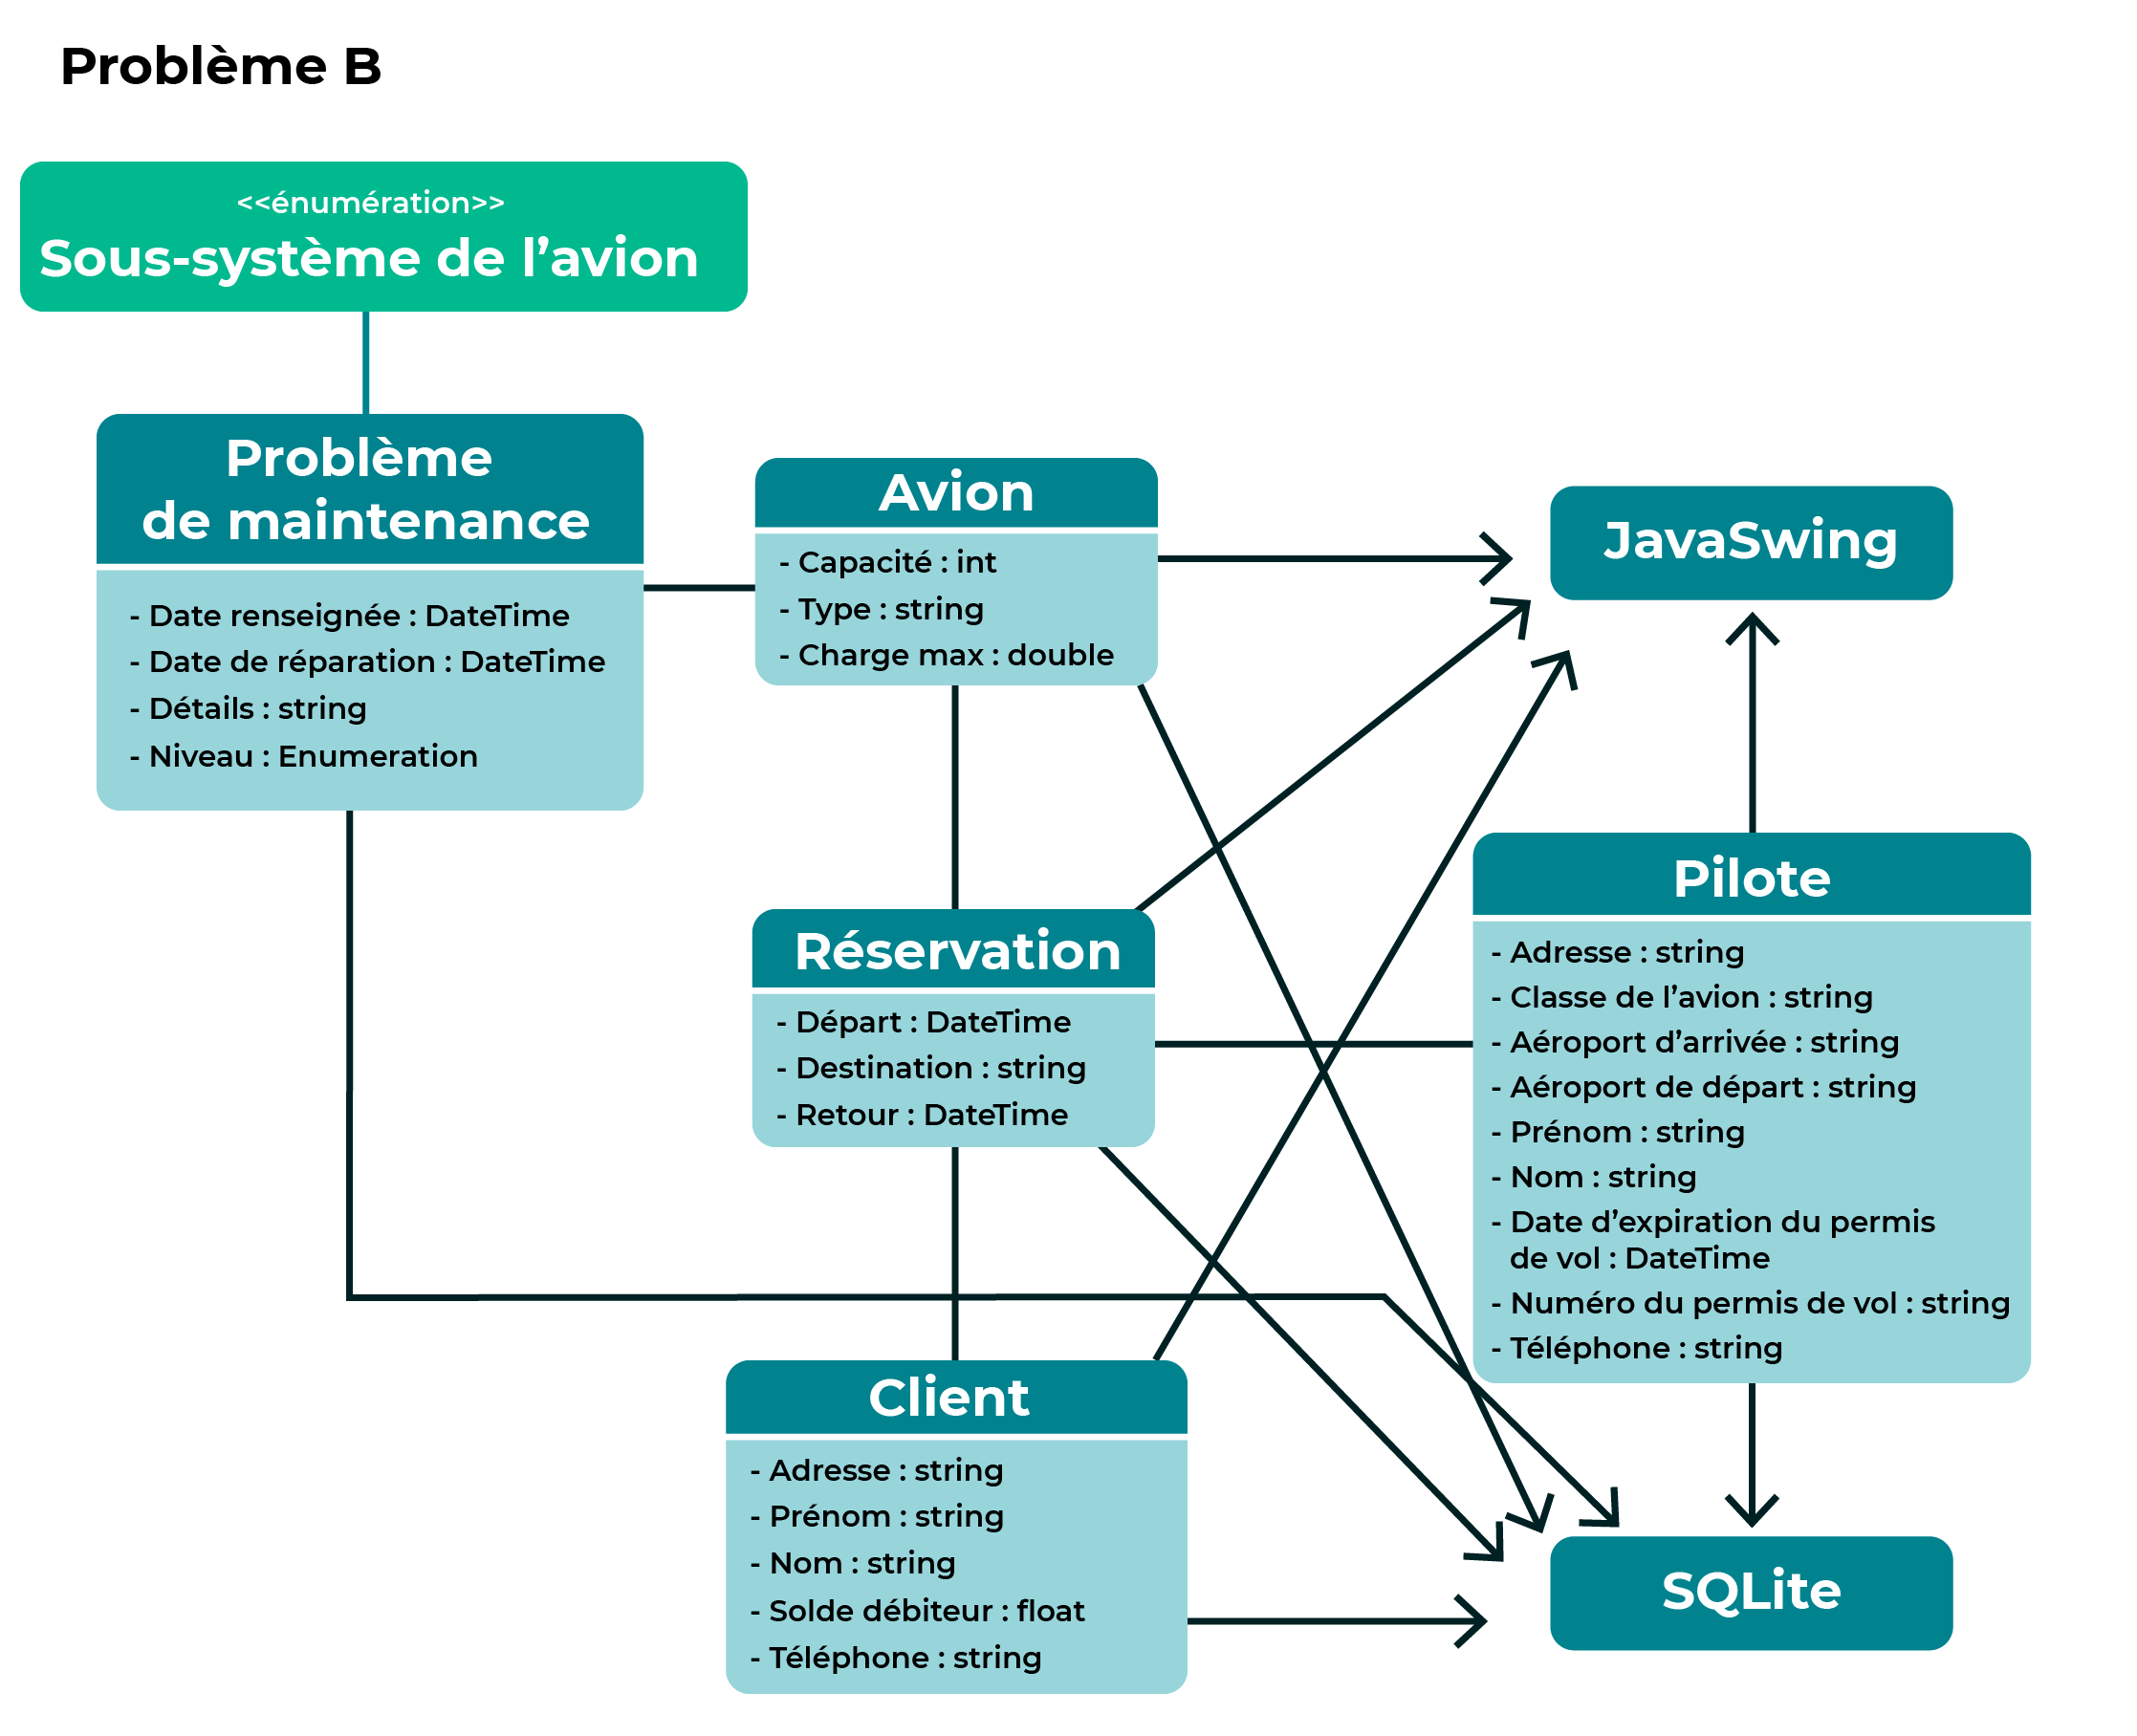 Le diagramme présenté reprend l'architecture initiale contenant les classes JavaSwing de base (avion, réservation, client et pilote) reliées à la base de données SQLite mais il y a en plus une nouvelle classe qui dédié au problème de maintenance.